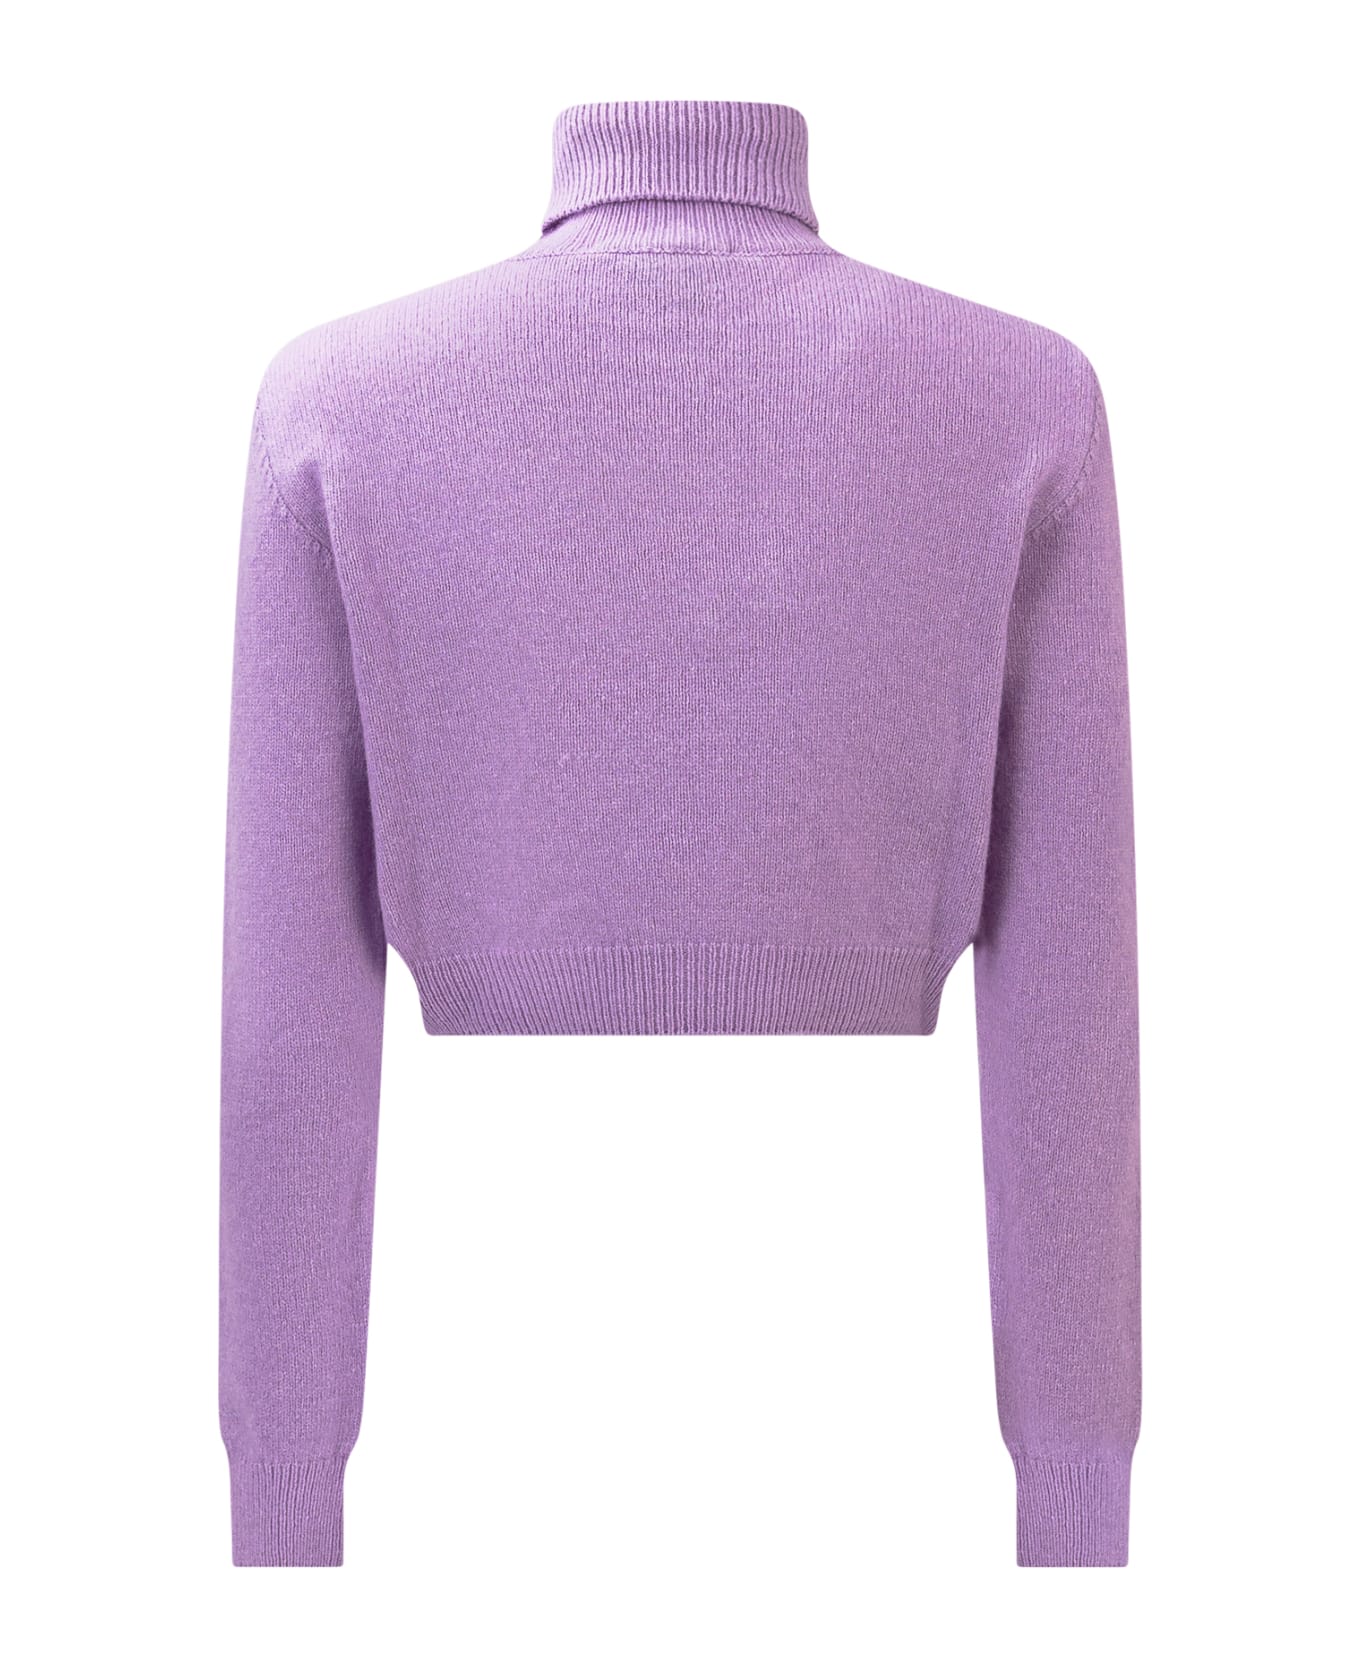 Chiara Ferragni Eye Star Sweater - PURPLE ROSE ニットウェア